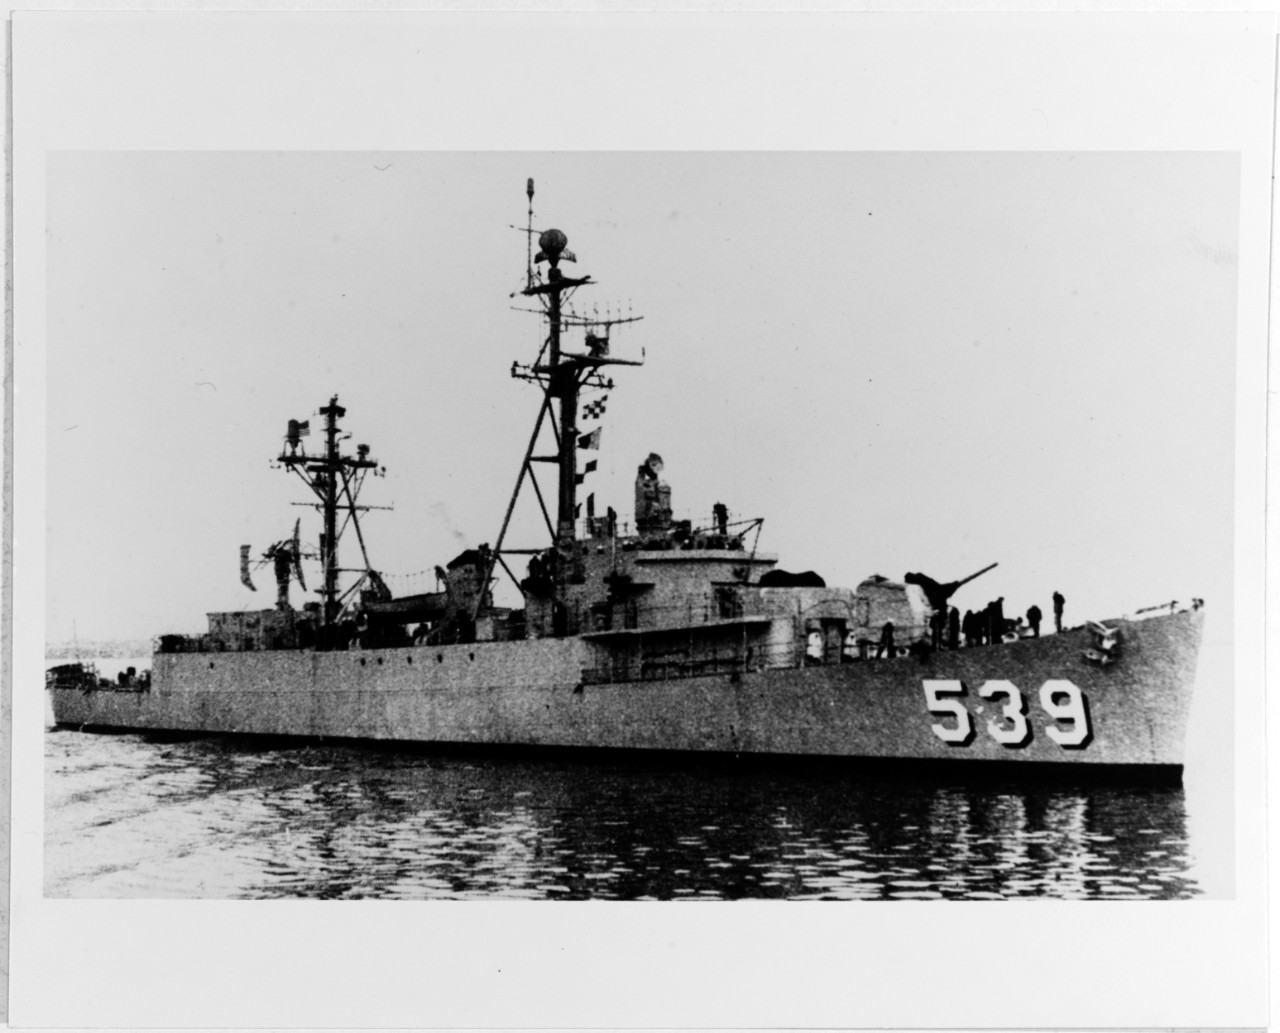 USS WAGNER (DER-539)